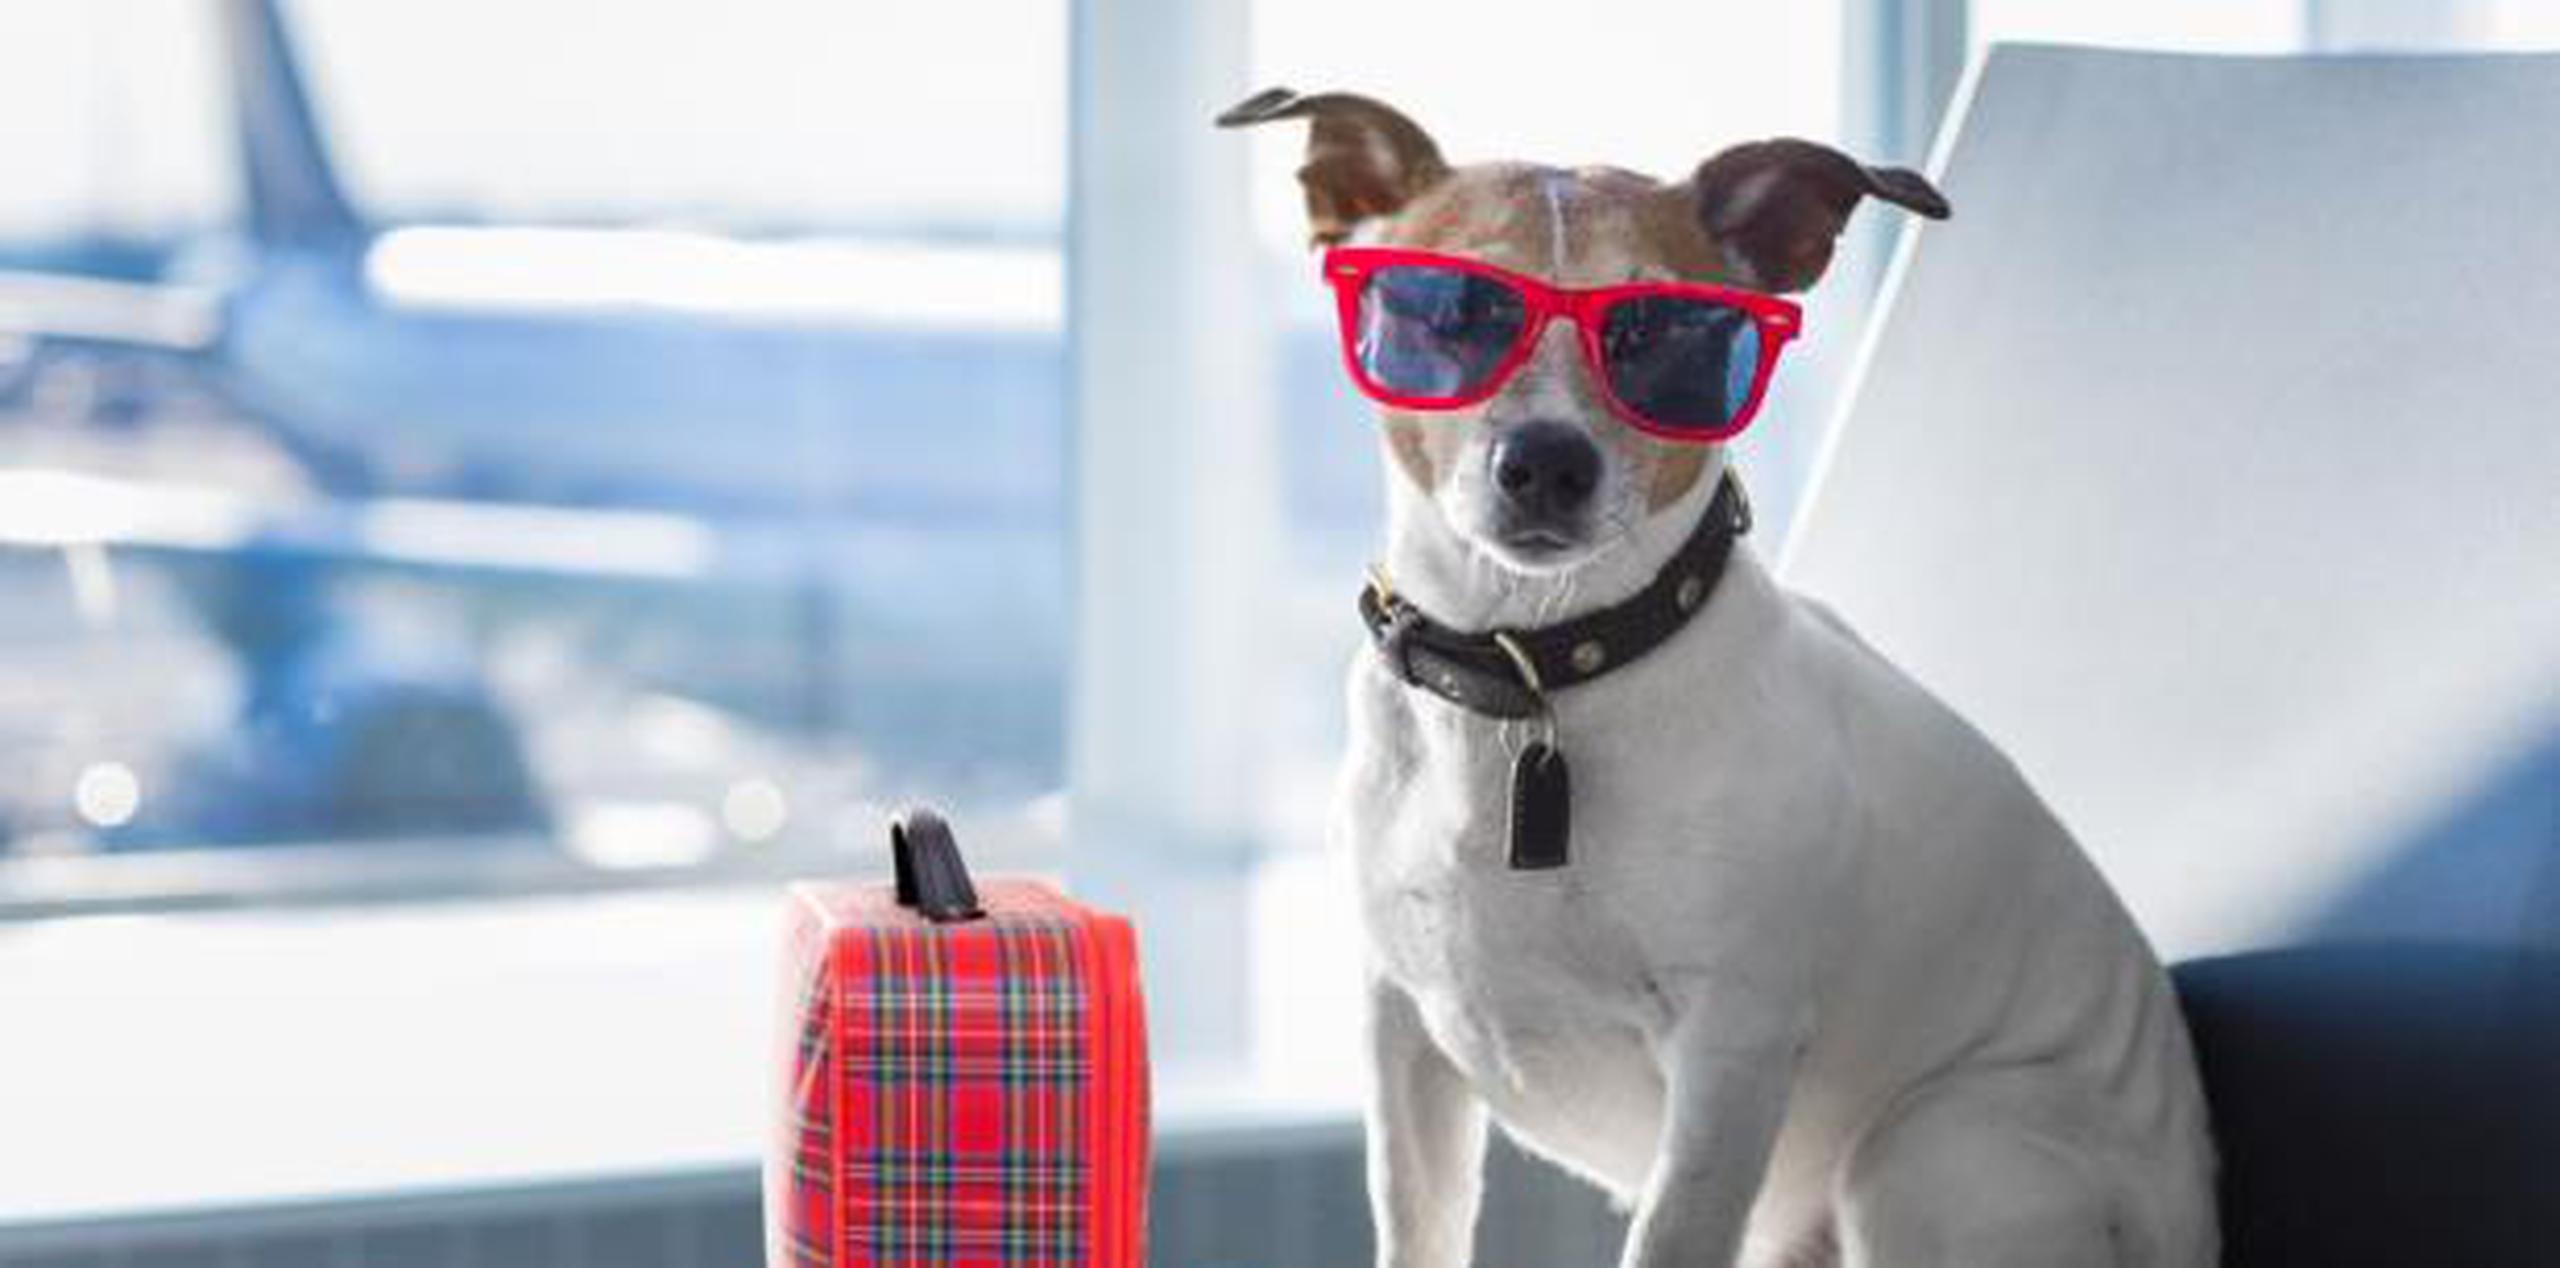 Experto señala que lo más importante es llevarlo al veterinario para asegurar que esté lo suficientemente saludable para viajar y que tenga todos los documentos necesarios. (Shutterstock)